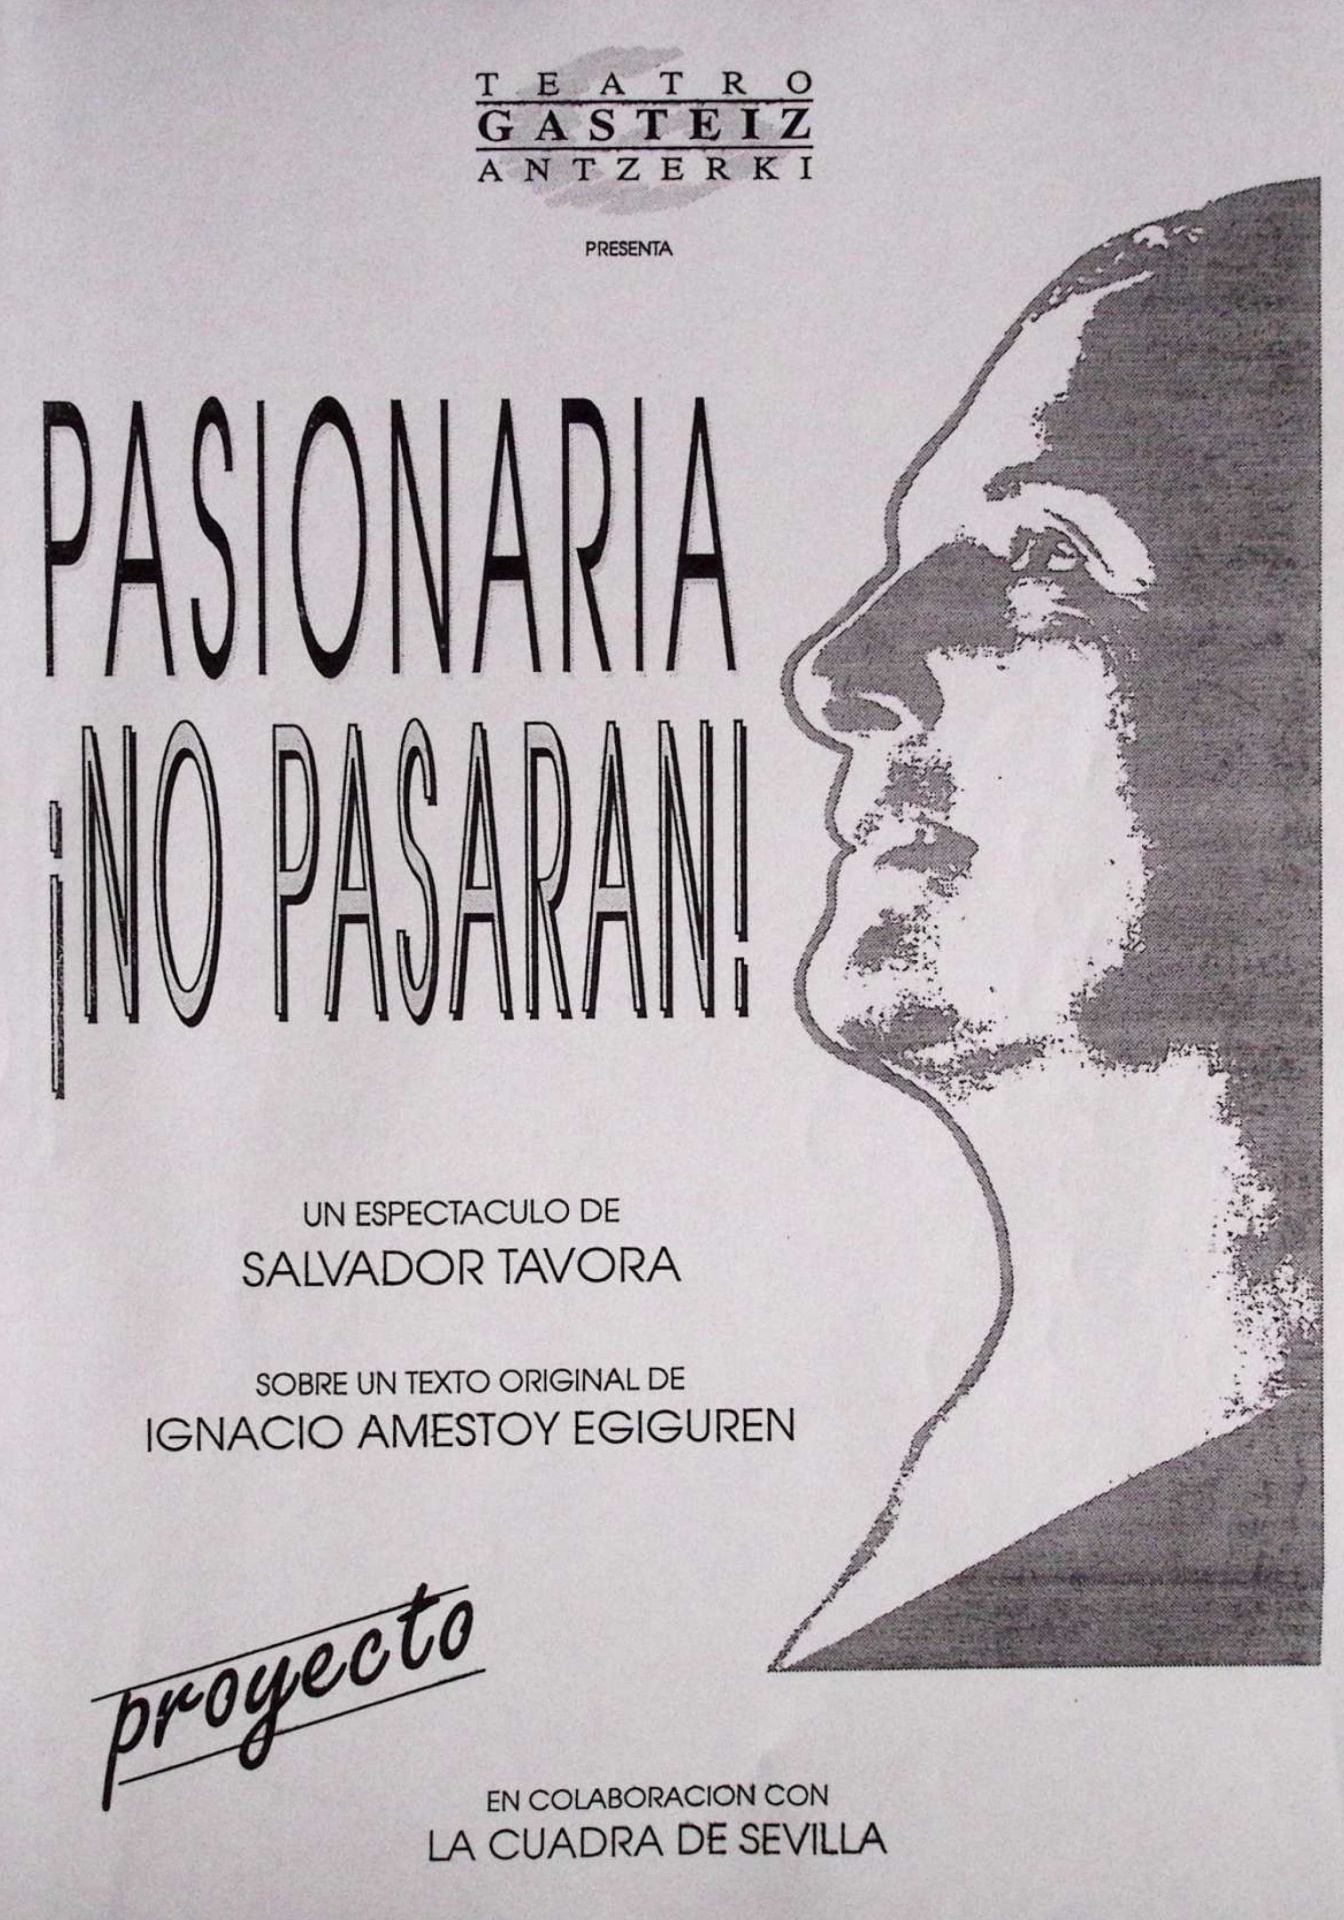 Teatro Gasteiz Antzerki presenta Pasionaria ¡no pasarán! Proyecto